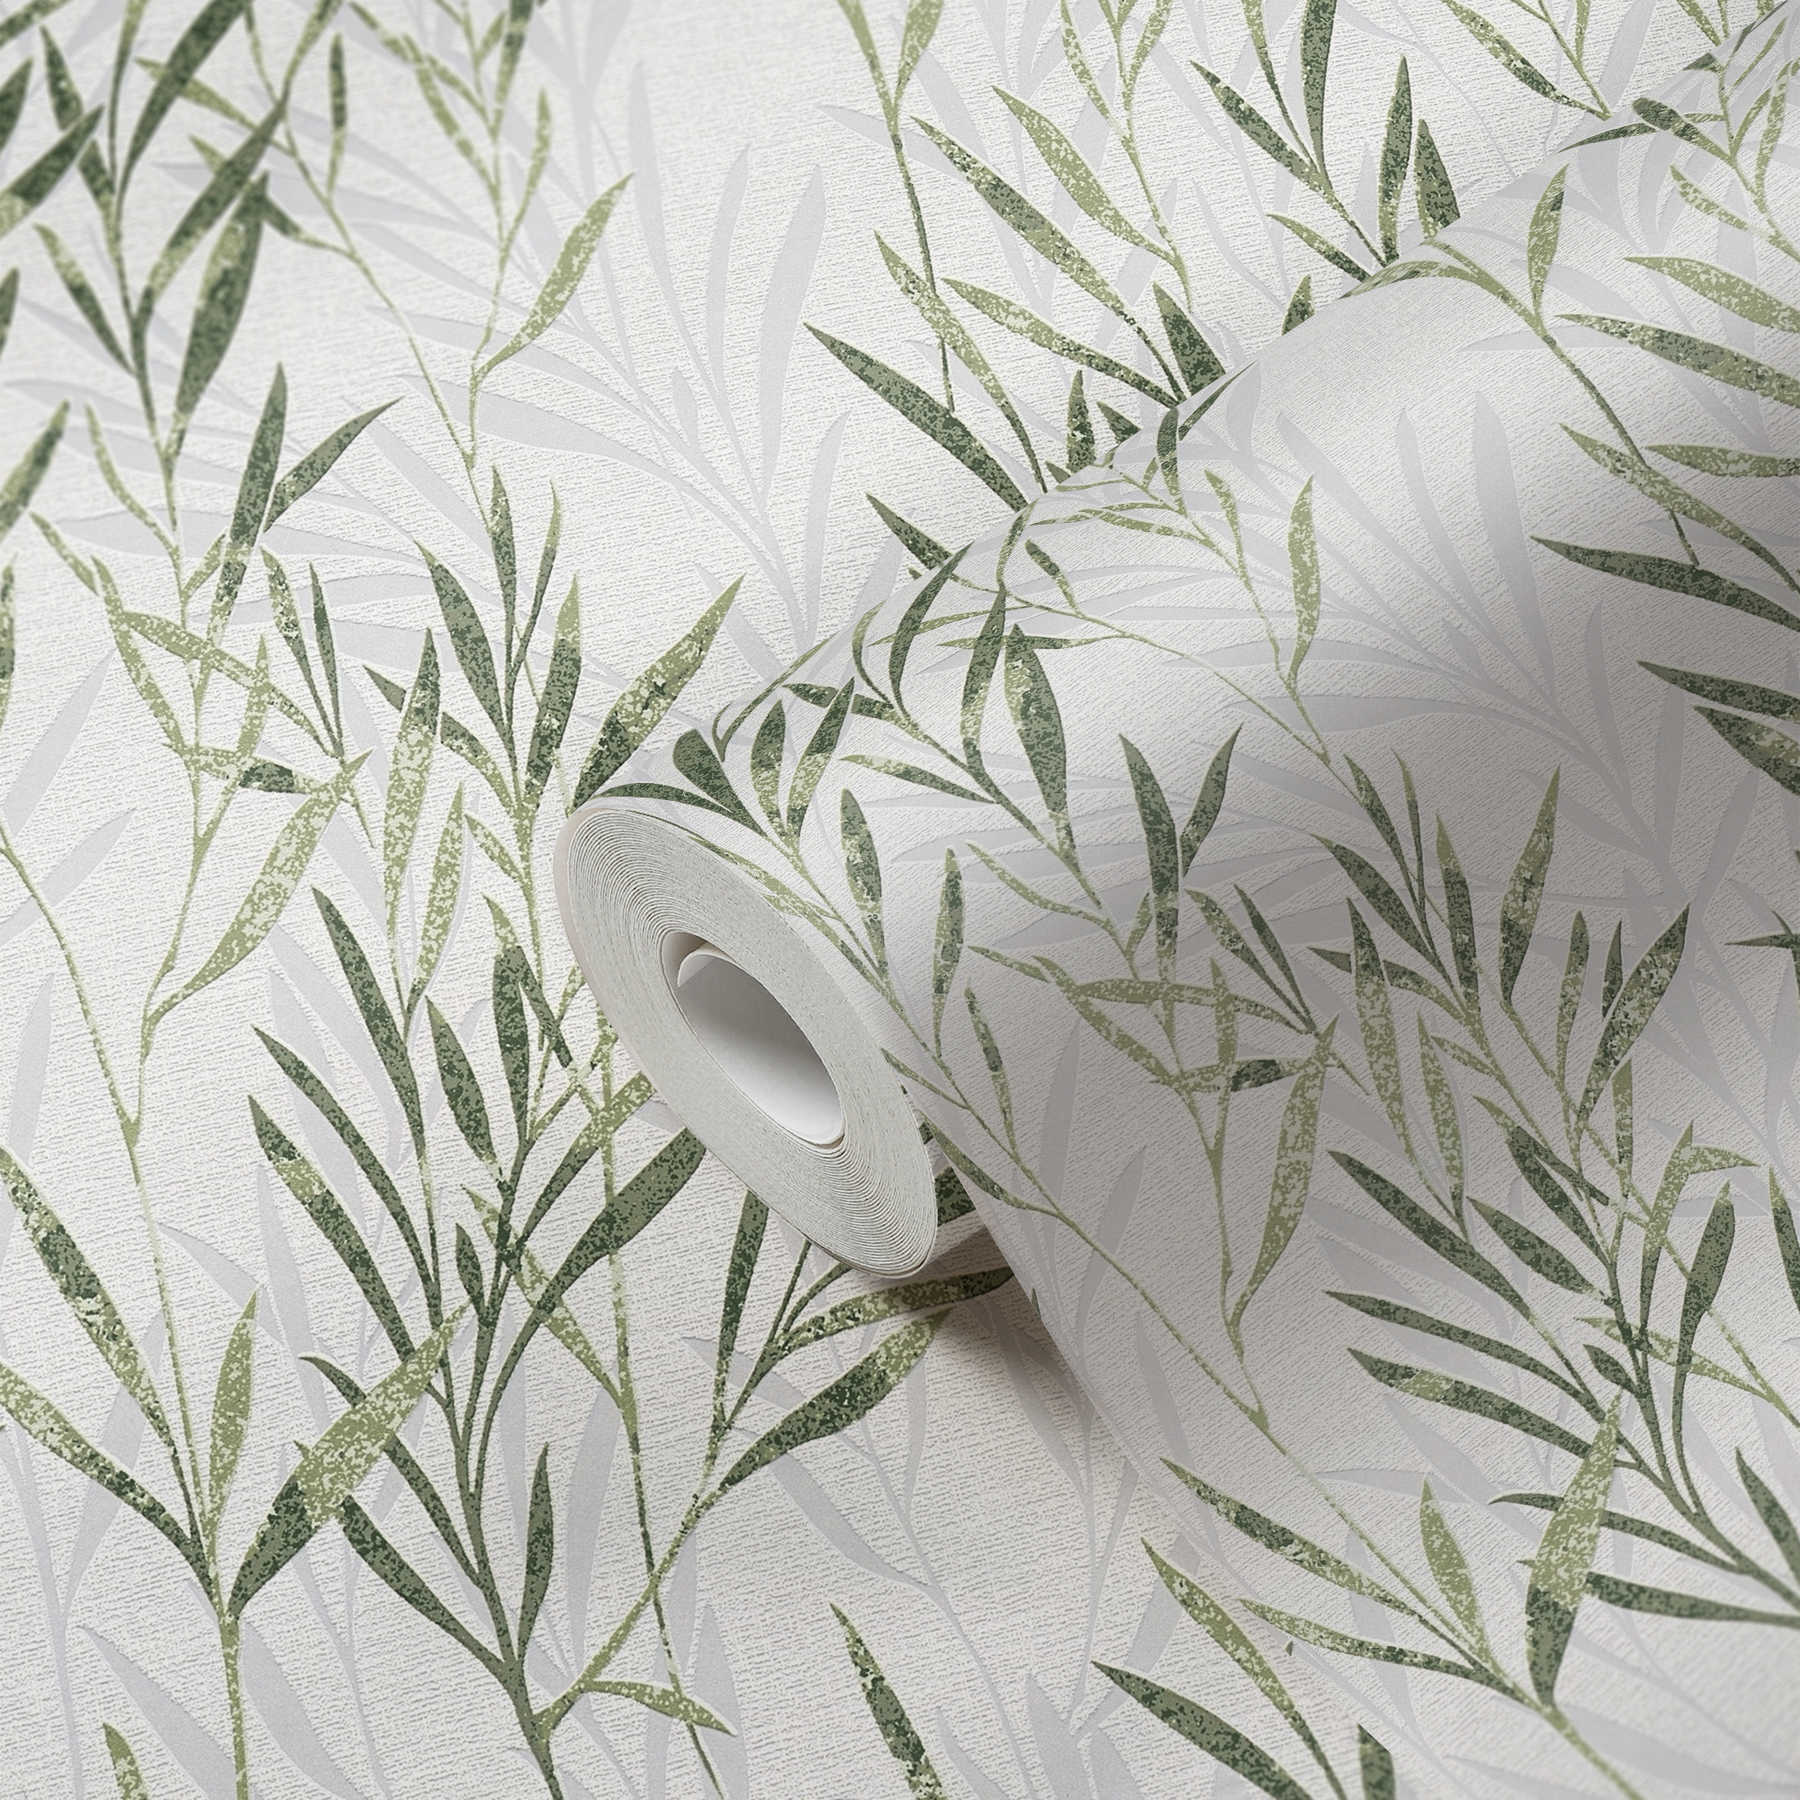             Papier peint intissé Feuilles & motifs de rinceaux - vert, blanc
        